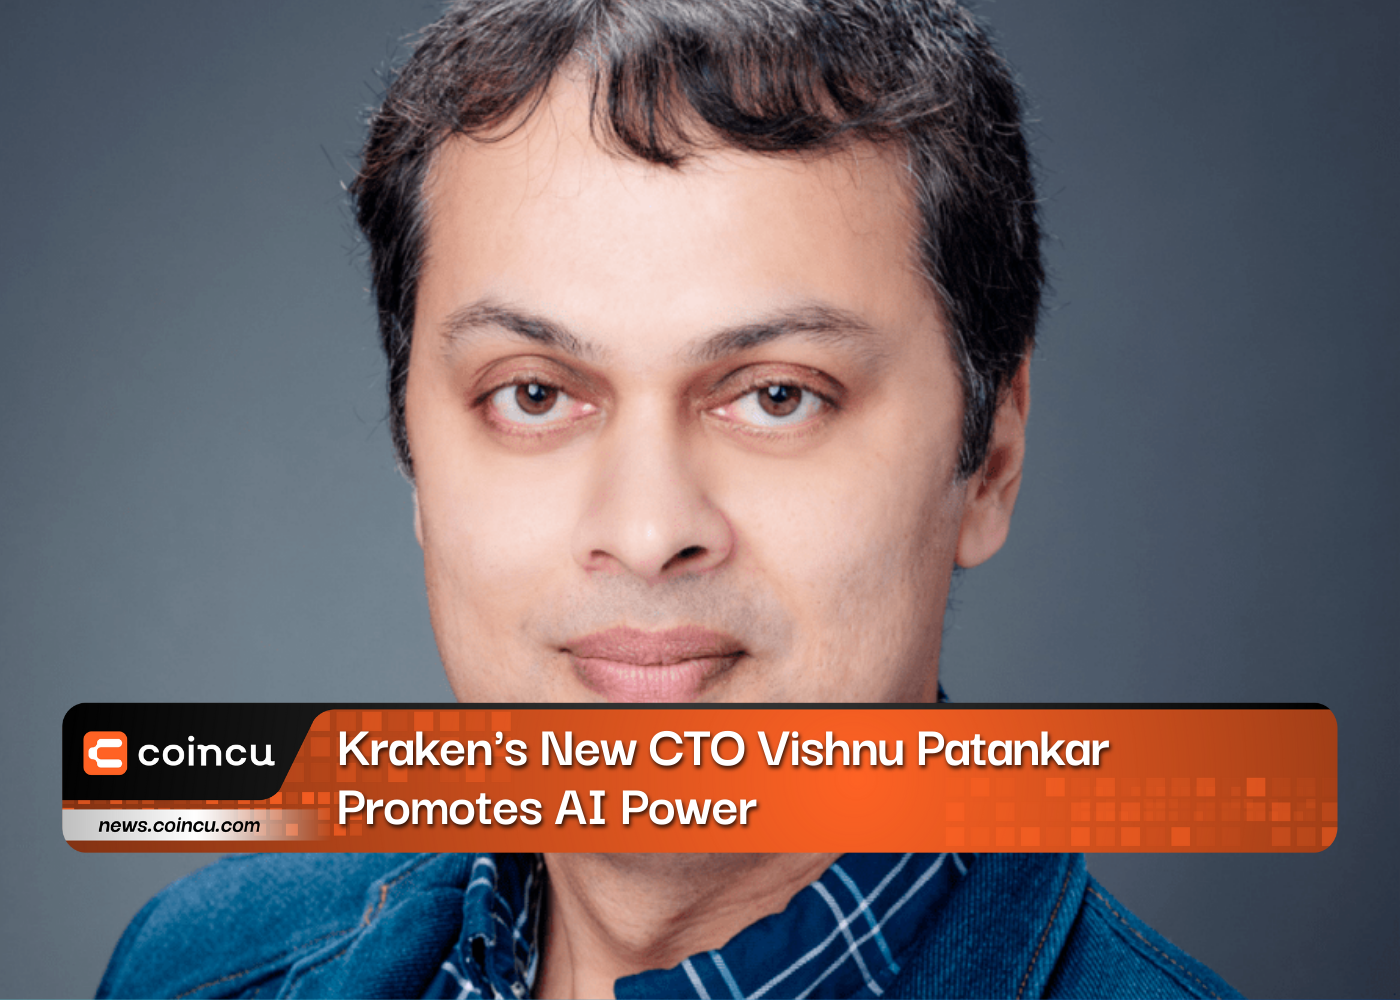 Kraken's New CTO Vishnu Patankar Promotes AI Power